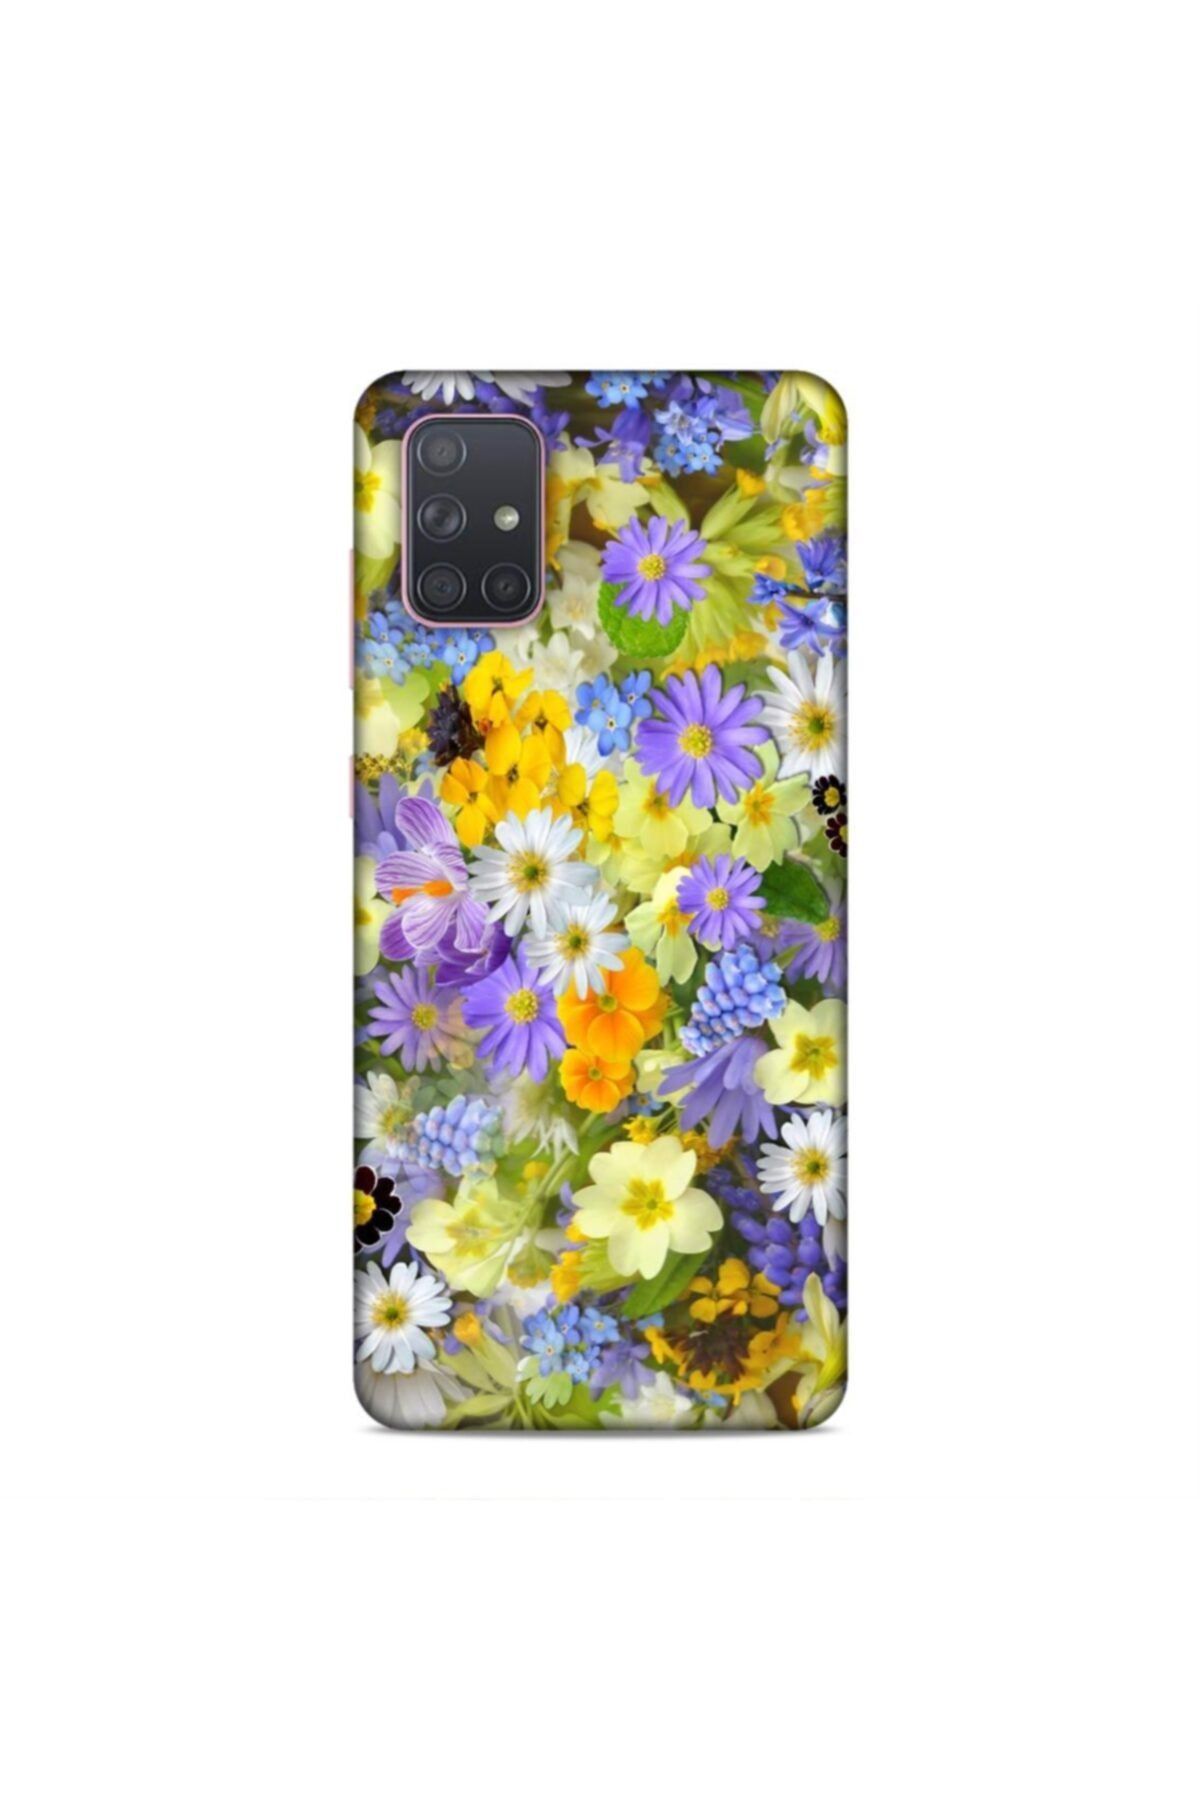 Pickcase Samsung Galaxy A71 Kılıf Desenli Arka Kapak Mor Ve Sarı Papatyalar